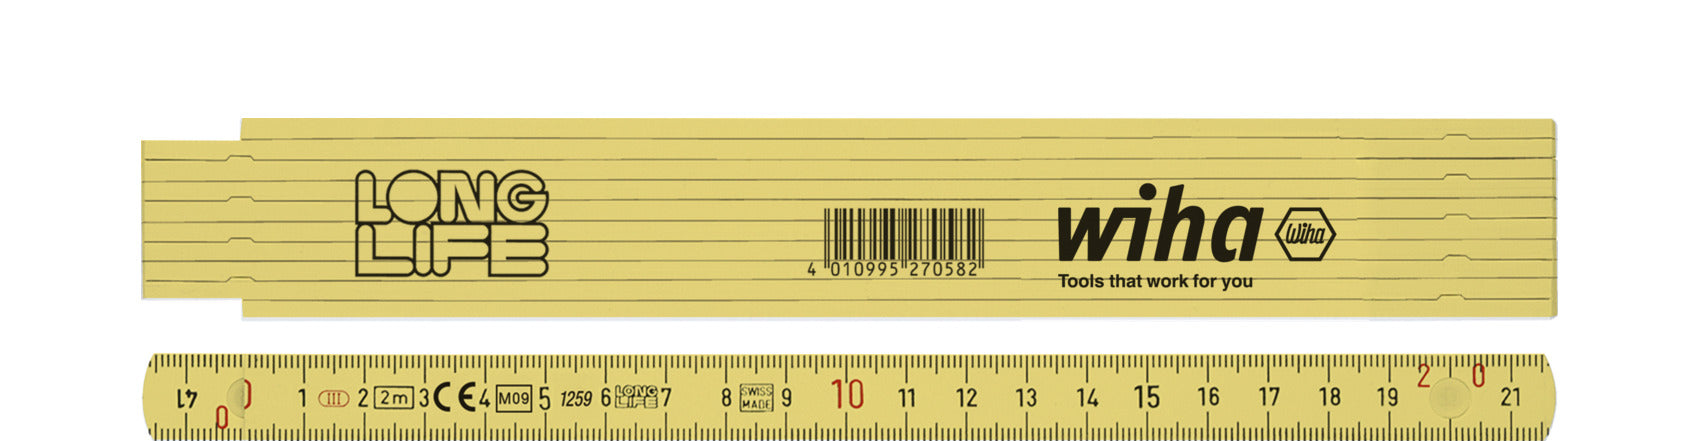 Wiha 27058 Folding Ruler 2m Yellow Metric Plastic Longlife